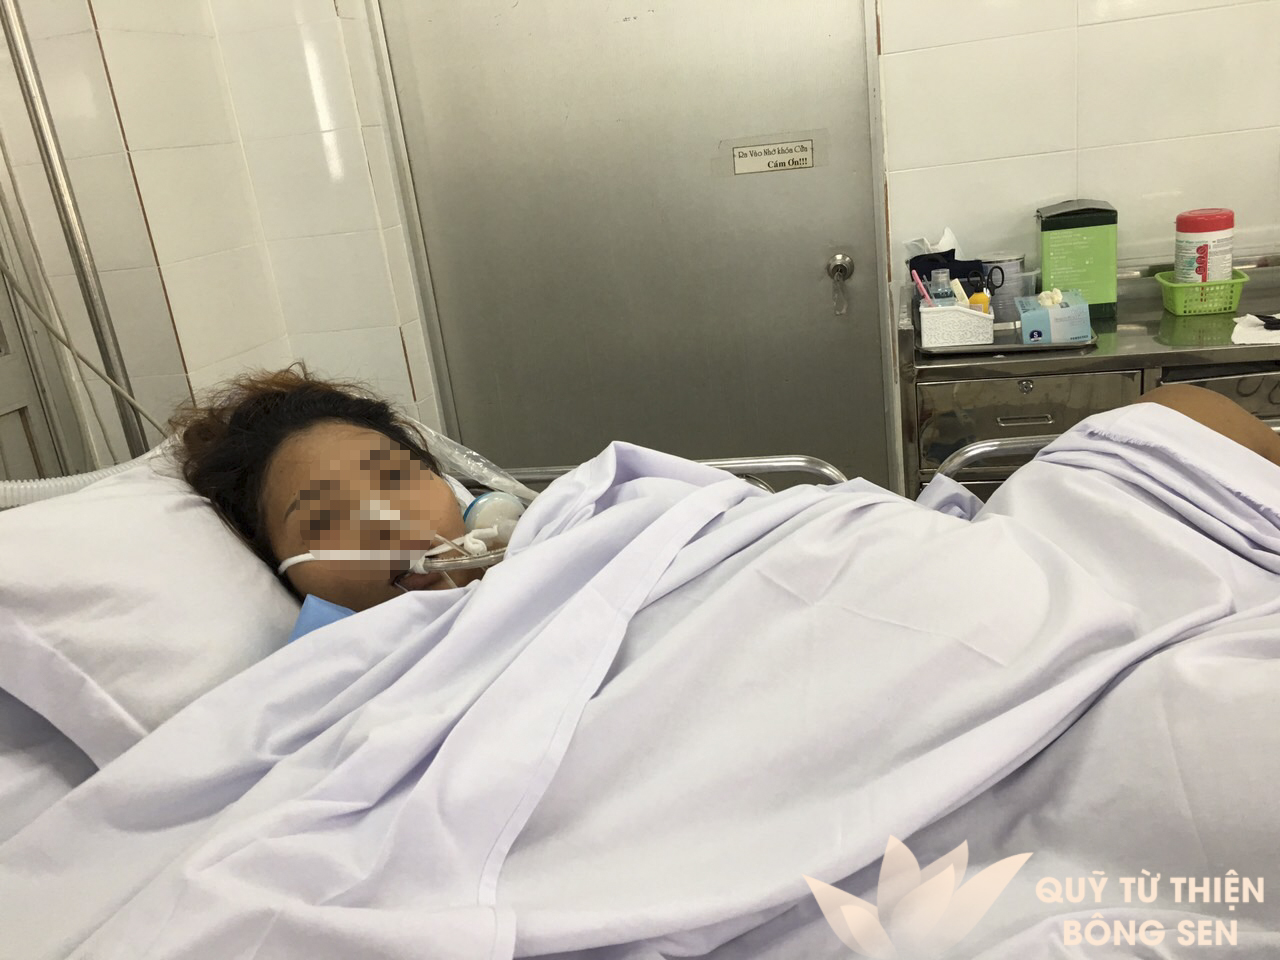 Kỳ 407: Thị Thu (sinh năm 1989), quê Bình Phước, viêm tụy cấp, hỗ trợ 12 triệu đồng ngày 19/04/2019